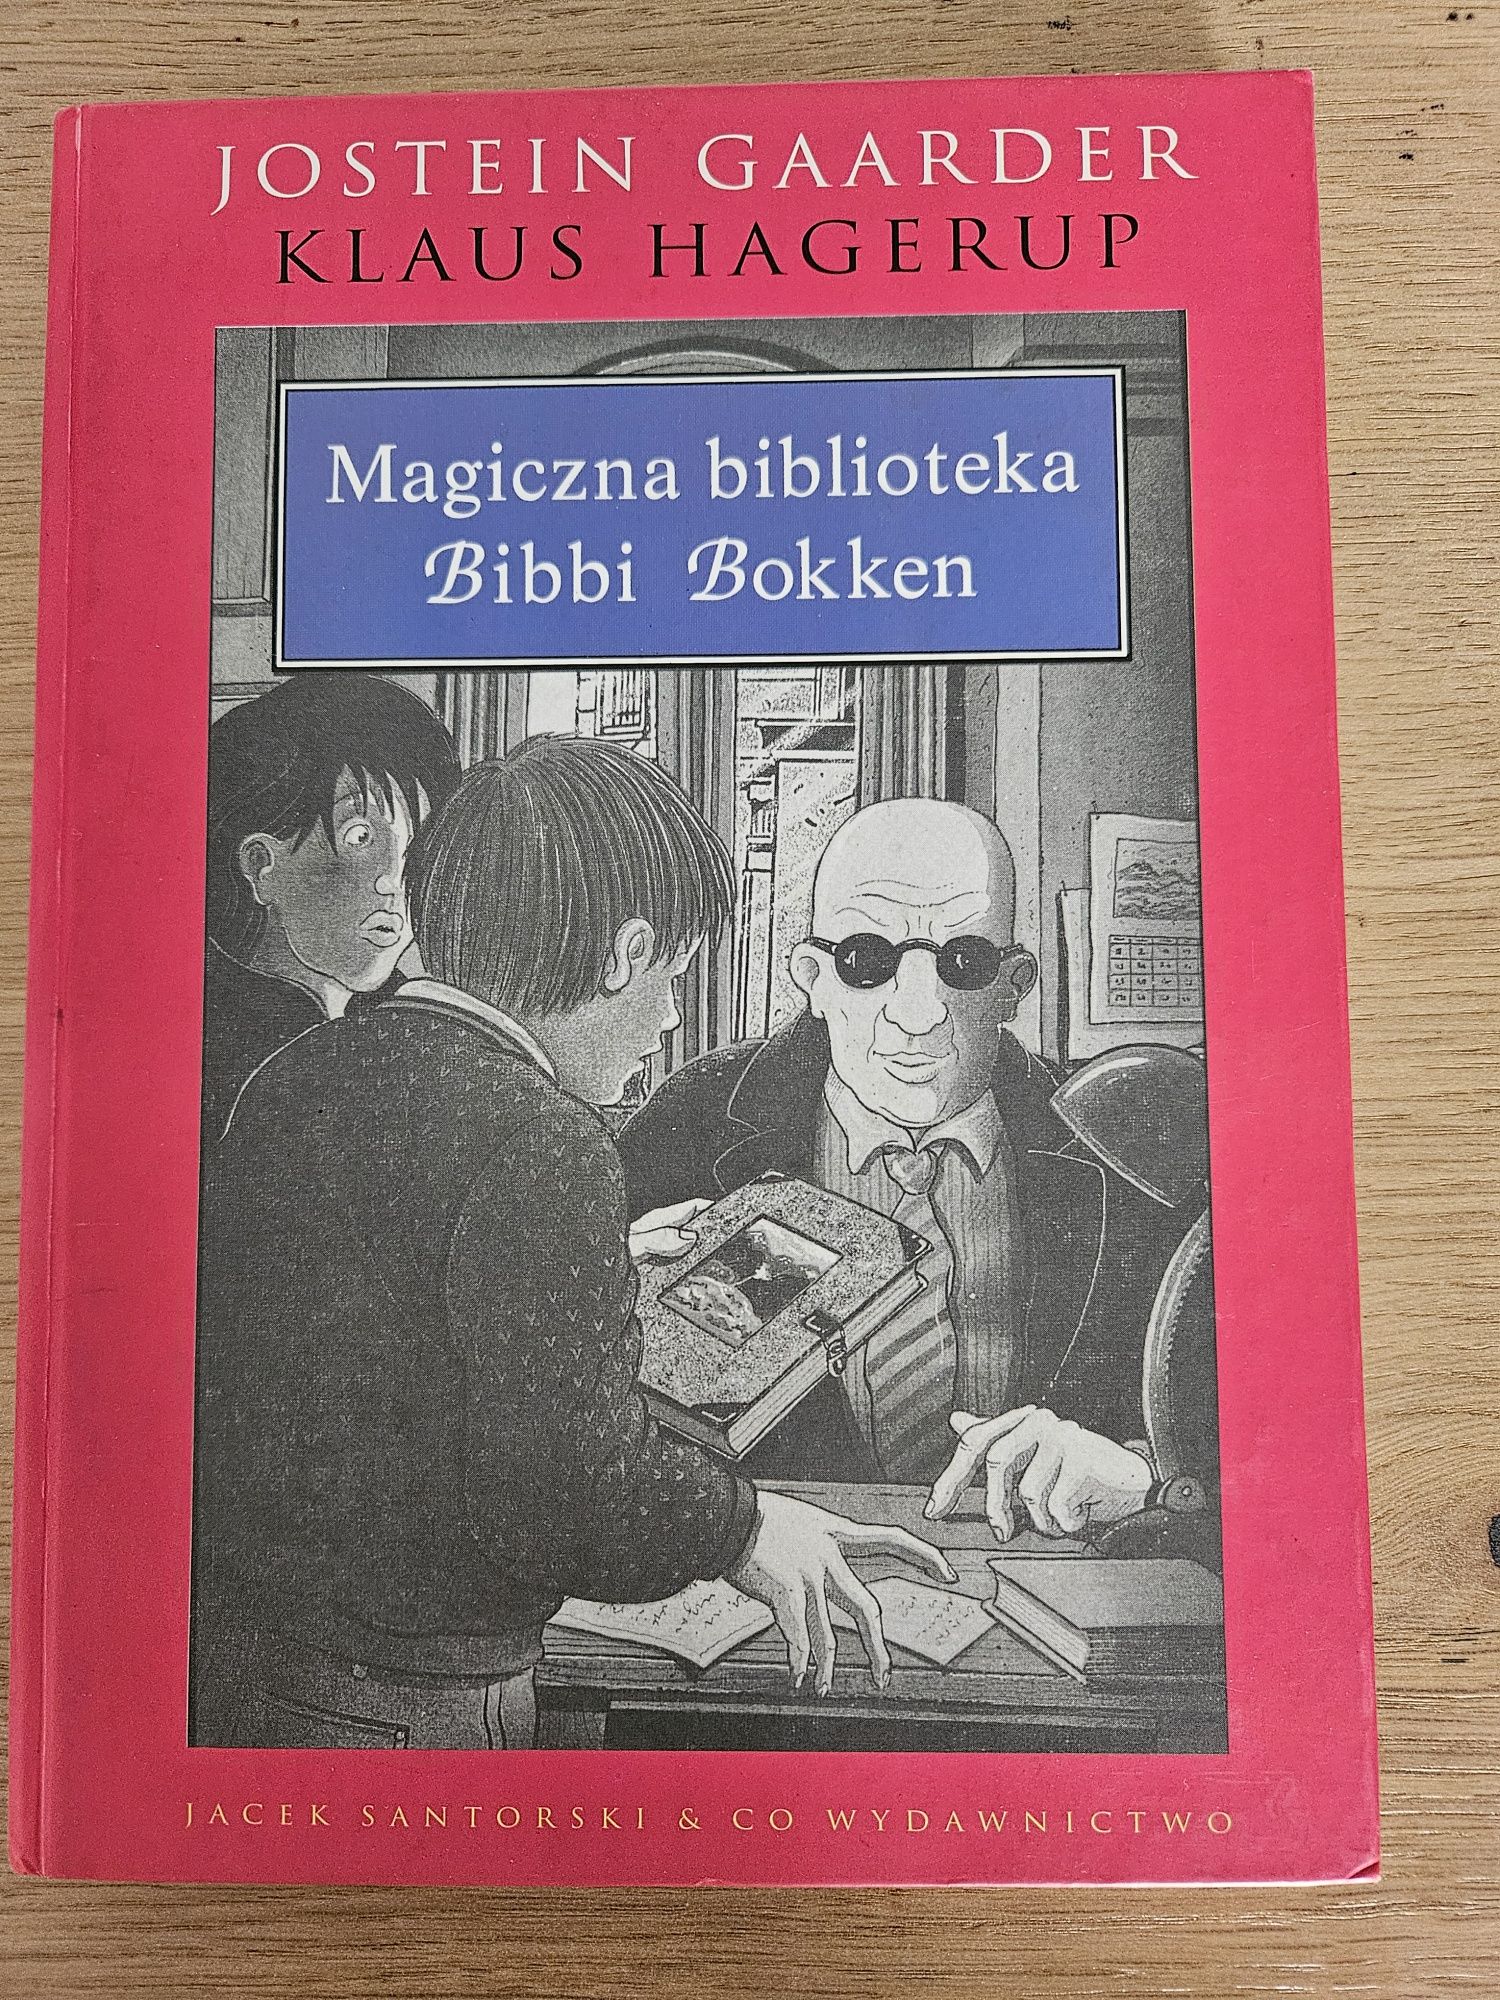 Magiczna Biblioteka Bibbi Bokken Jostein Gaarder